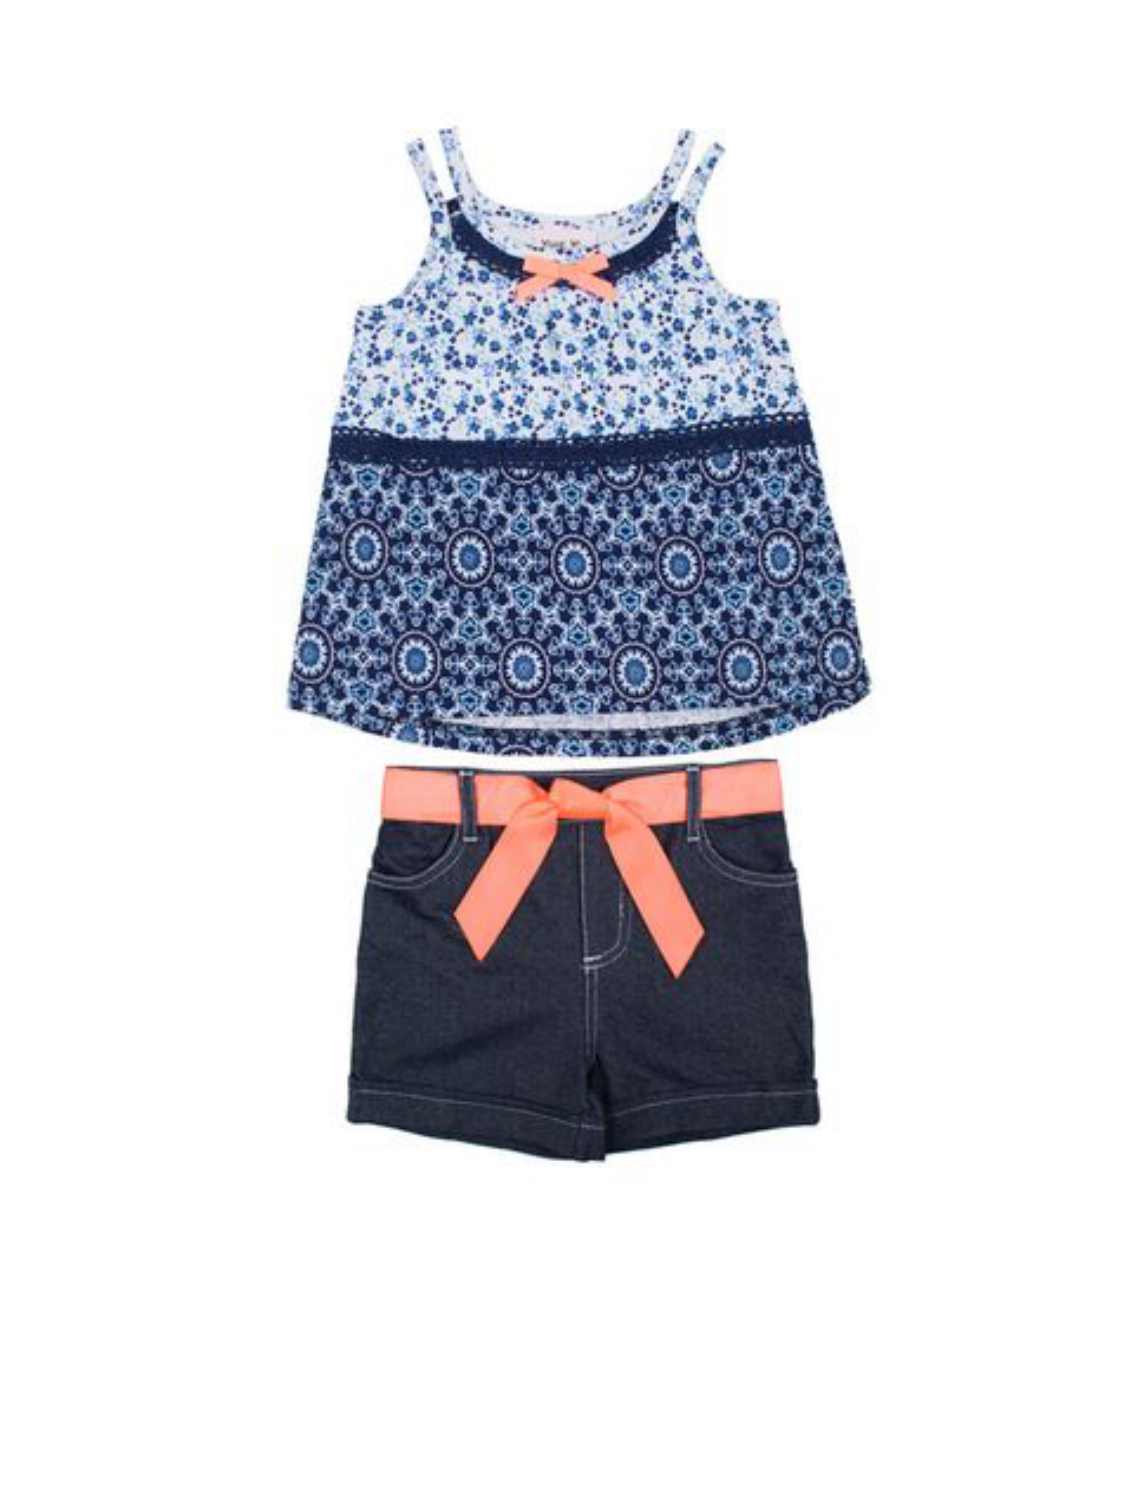 Little Lass Infant Girls Blue Floral Gauze Top & Knit Denim Shorts Set 12m